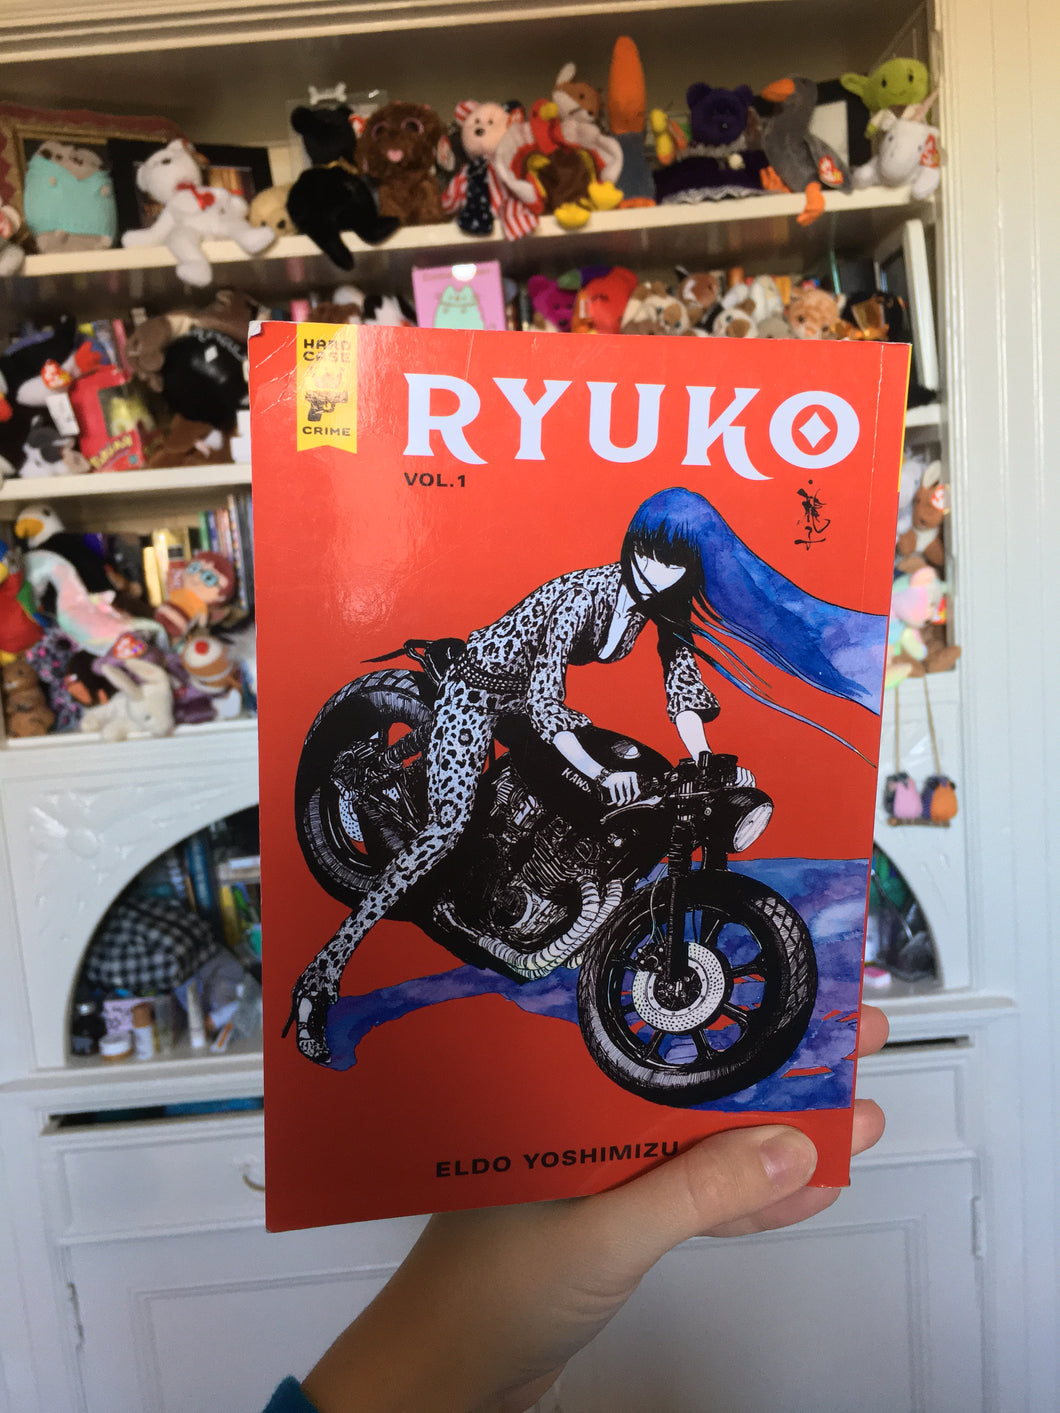 Ryuko vol. 1 by Eldo Yoshimizu